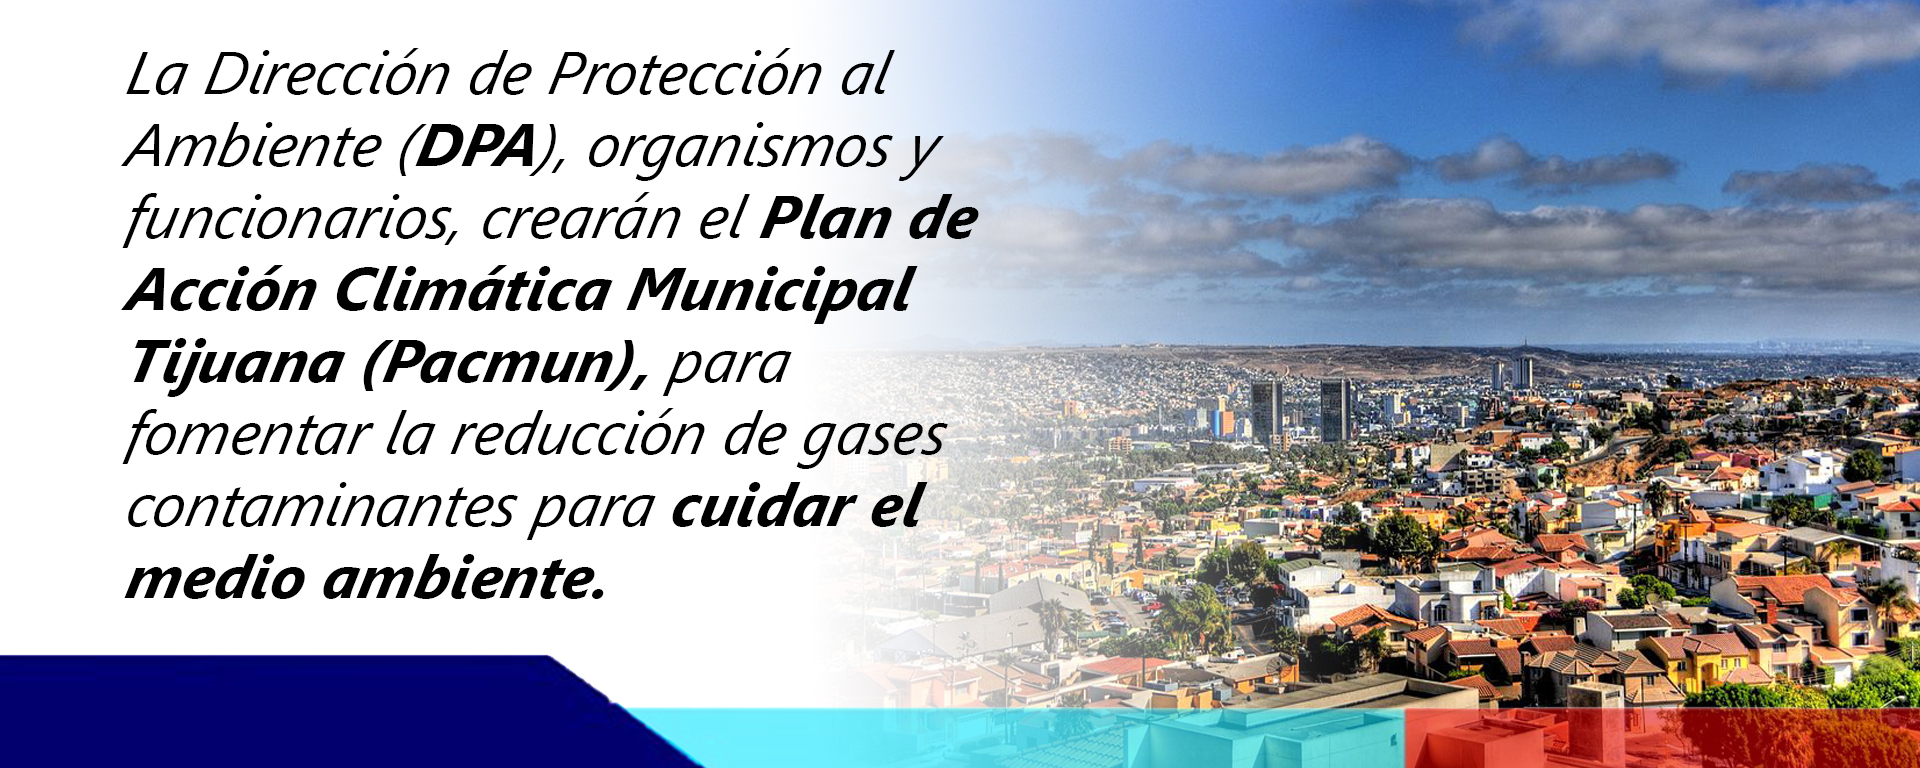 Fomentan en Tijuana reducción de gases para cuidar medio ambiente.